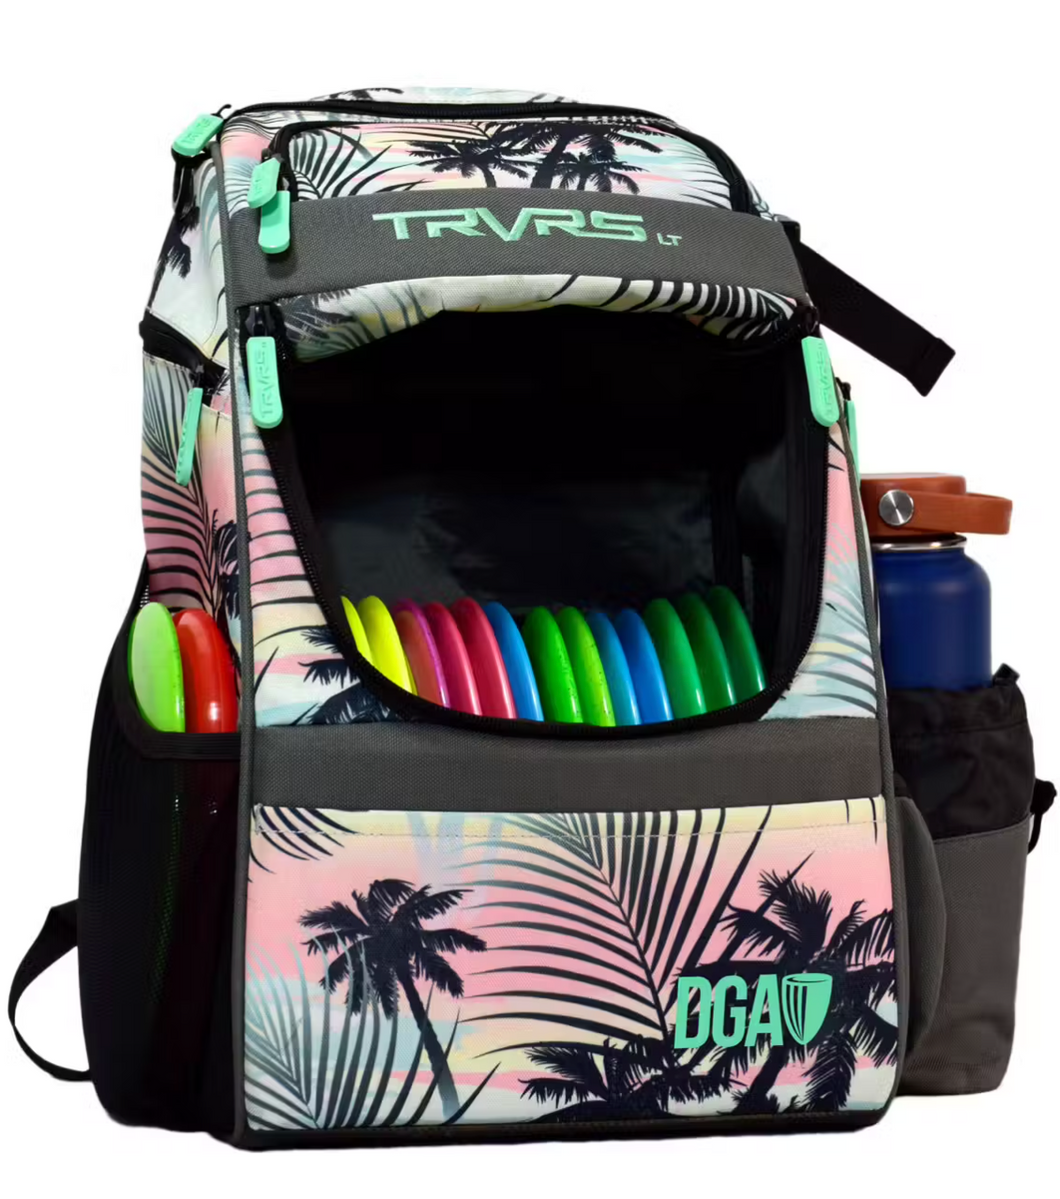 DGA TRVRS LT Backpack bag